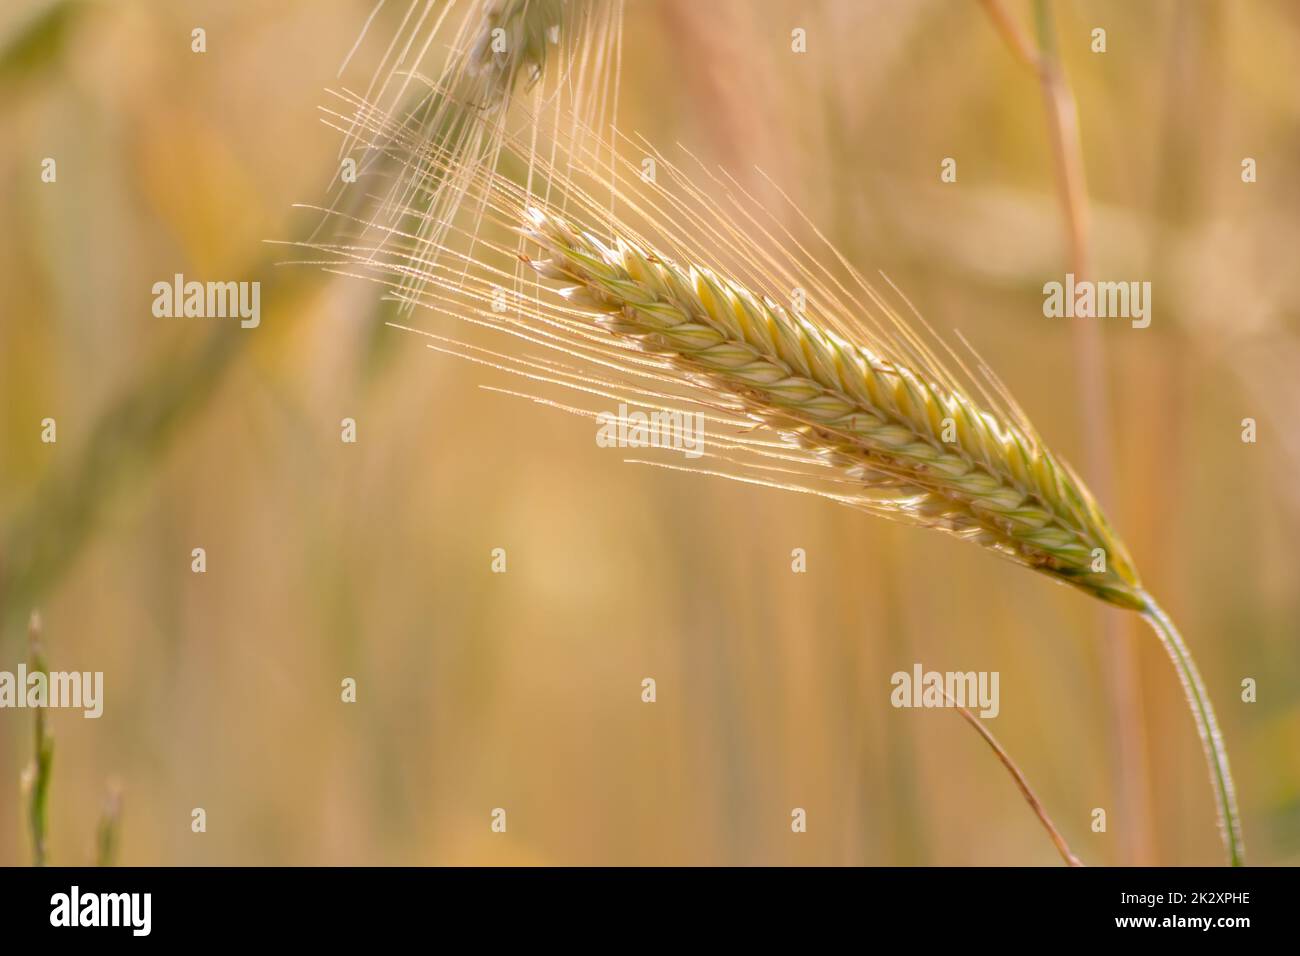 Der Anbau von Getreidearten, reifender Weizen, der auf die Sommerernte wartet, und landwirtschaftlichen frischen Zutaten mit ökologischem Landbau erfordert Regentropfen auf frischem Feld, um Brot und Getreide herzustellen Stockfoto